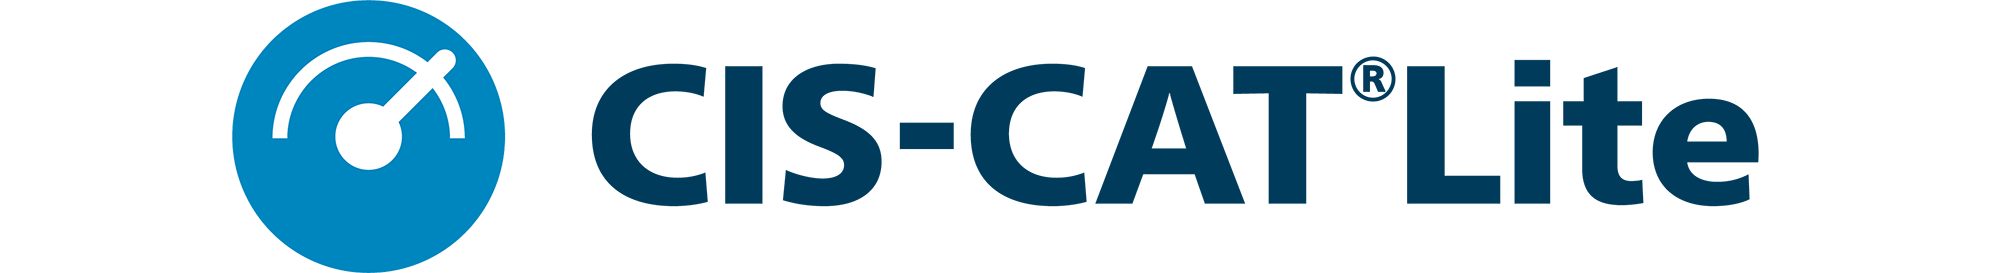 CIS CAT Lite logo